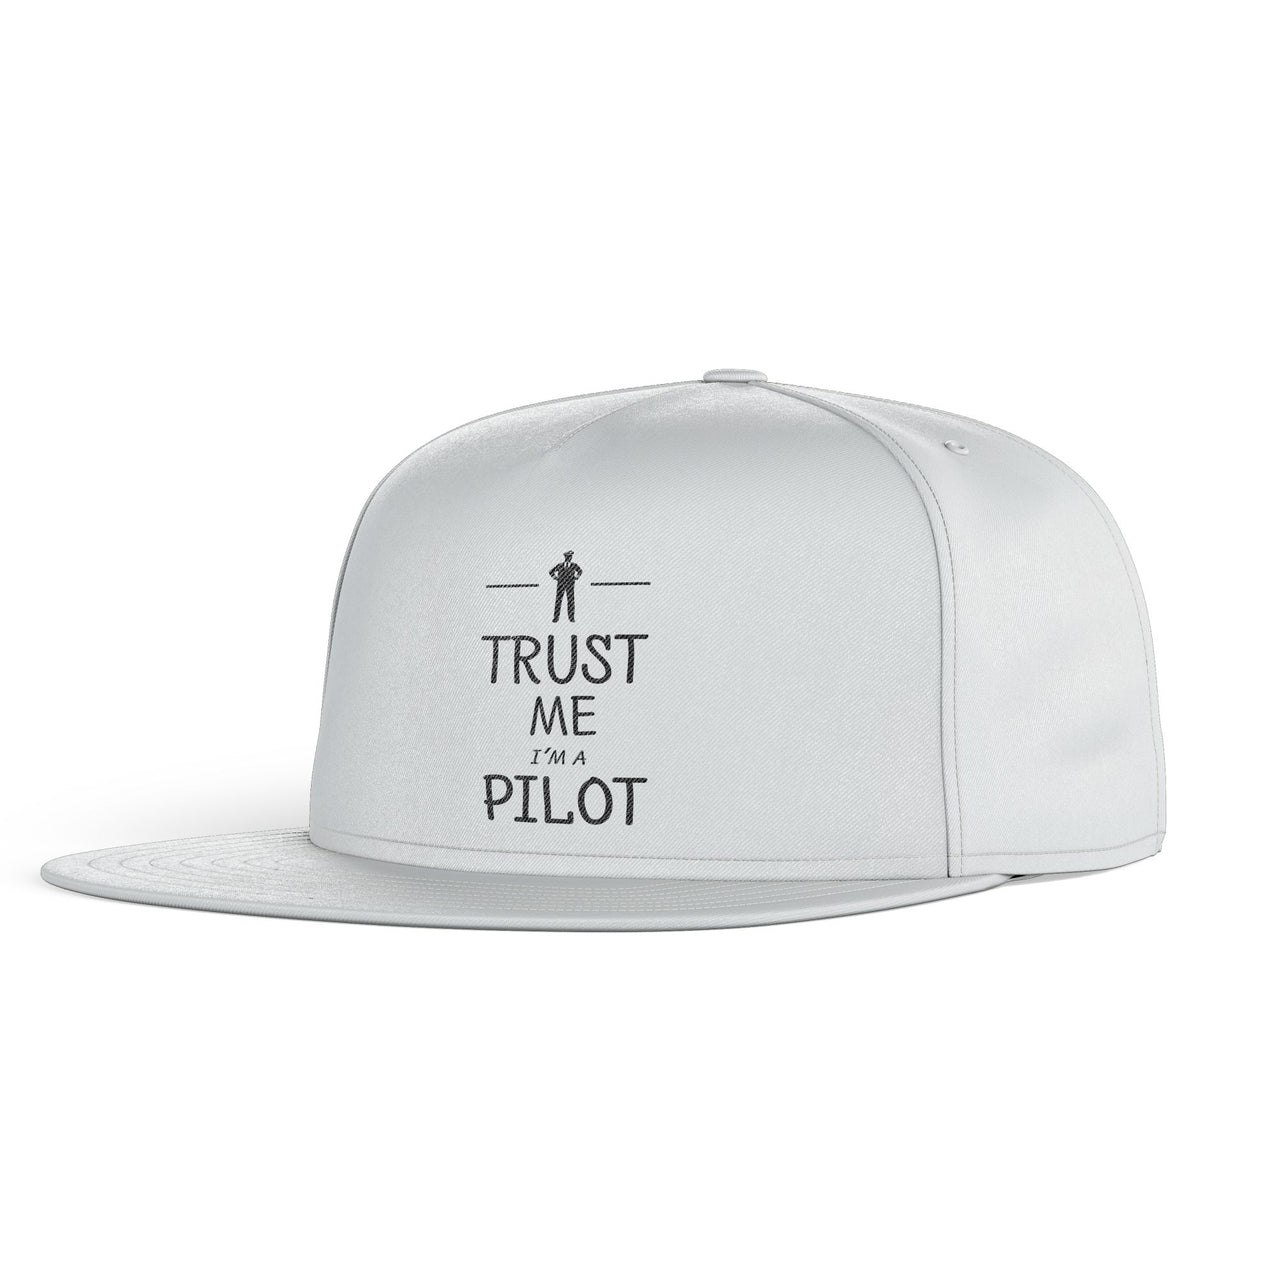 Trust Me I'm a Pilot Designed Snapback Caps & Hats